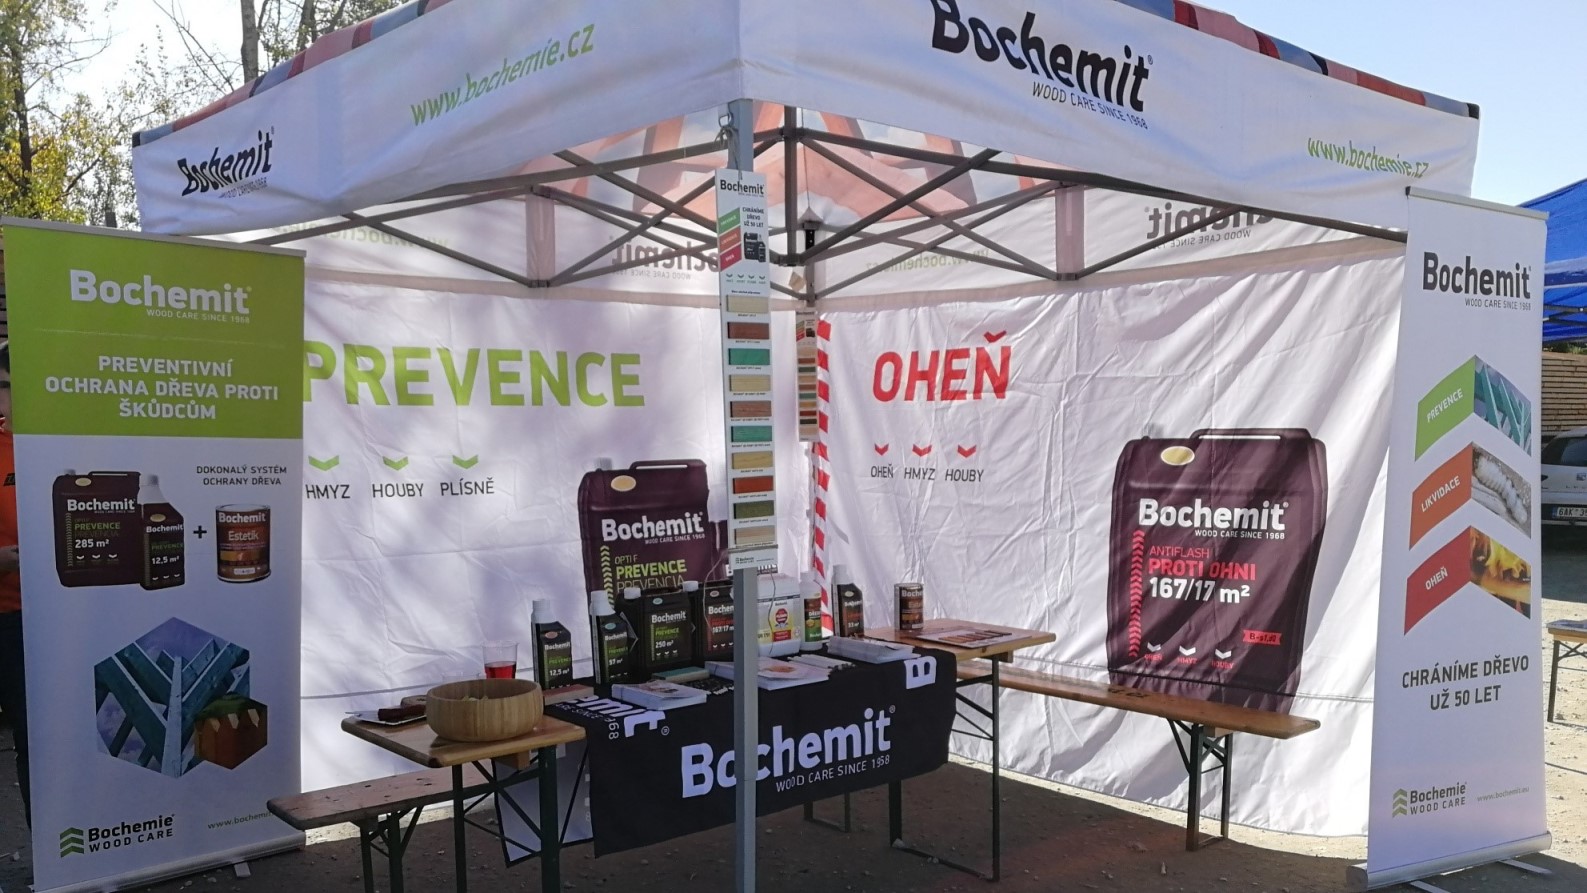 Holzbau- und Holzdach-Festival 2019 mit Bochemit